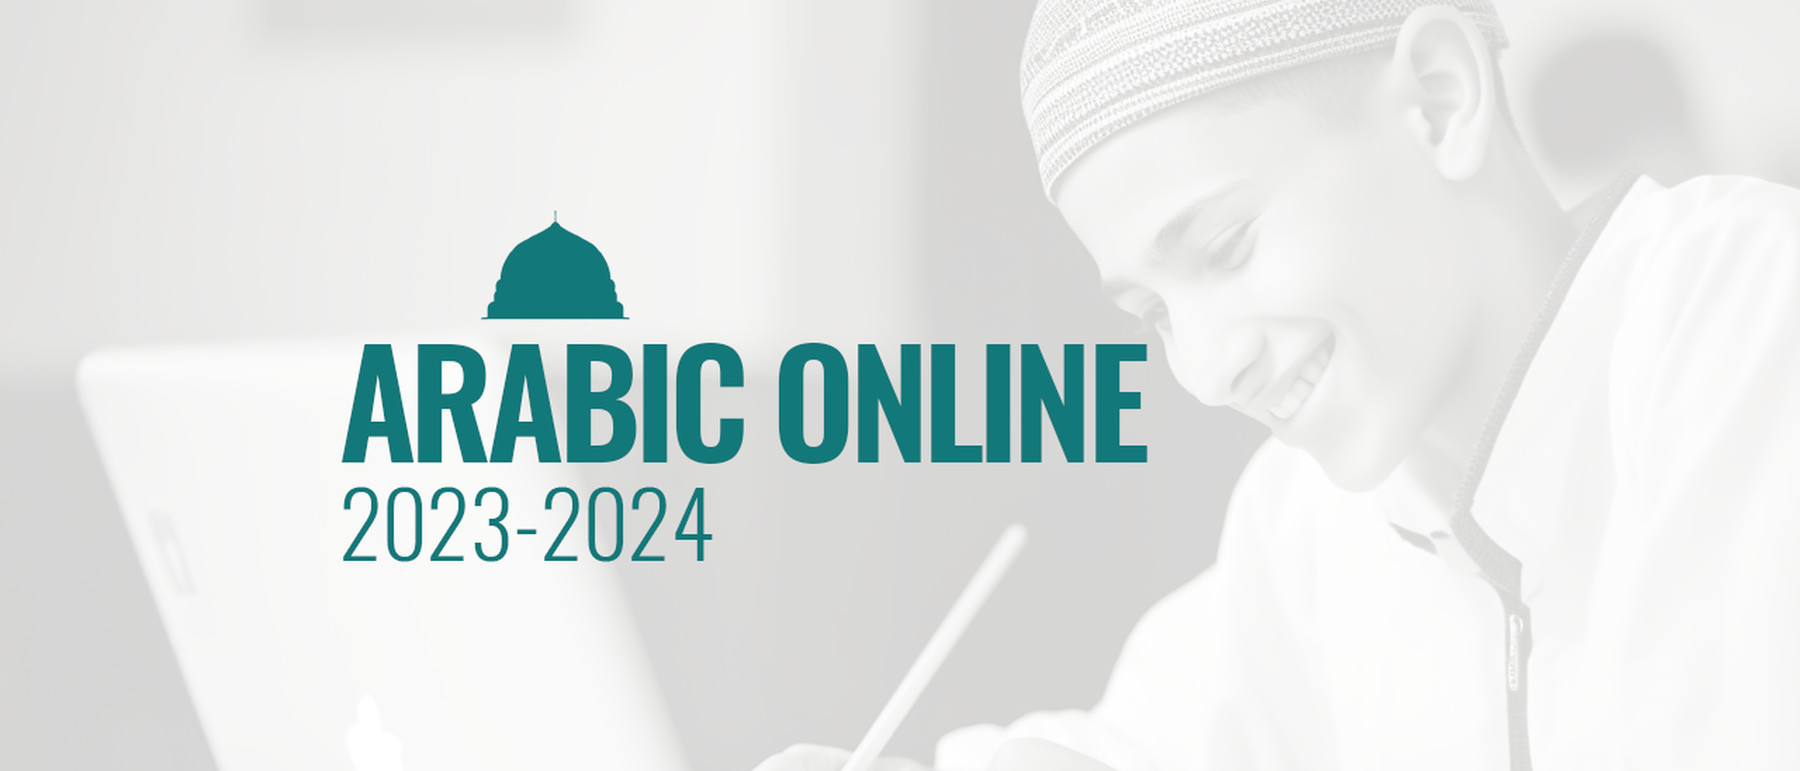 BANNER Arabic Online Kids 2023 2024 1280x720